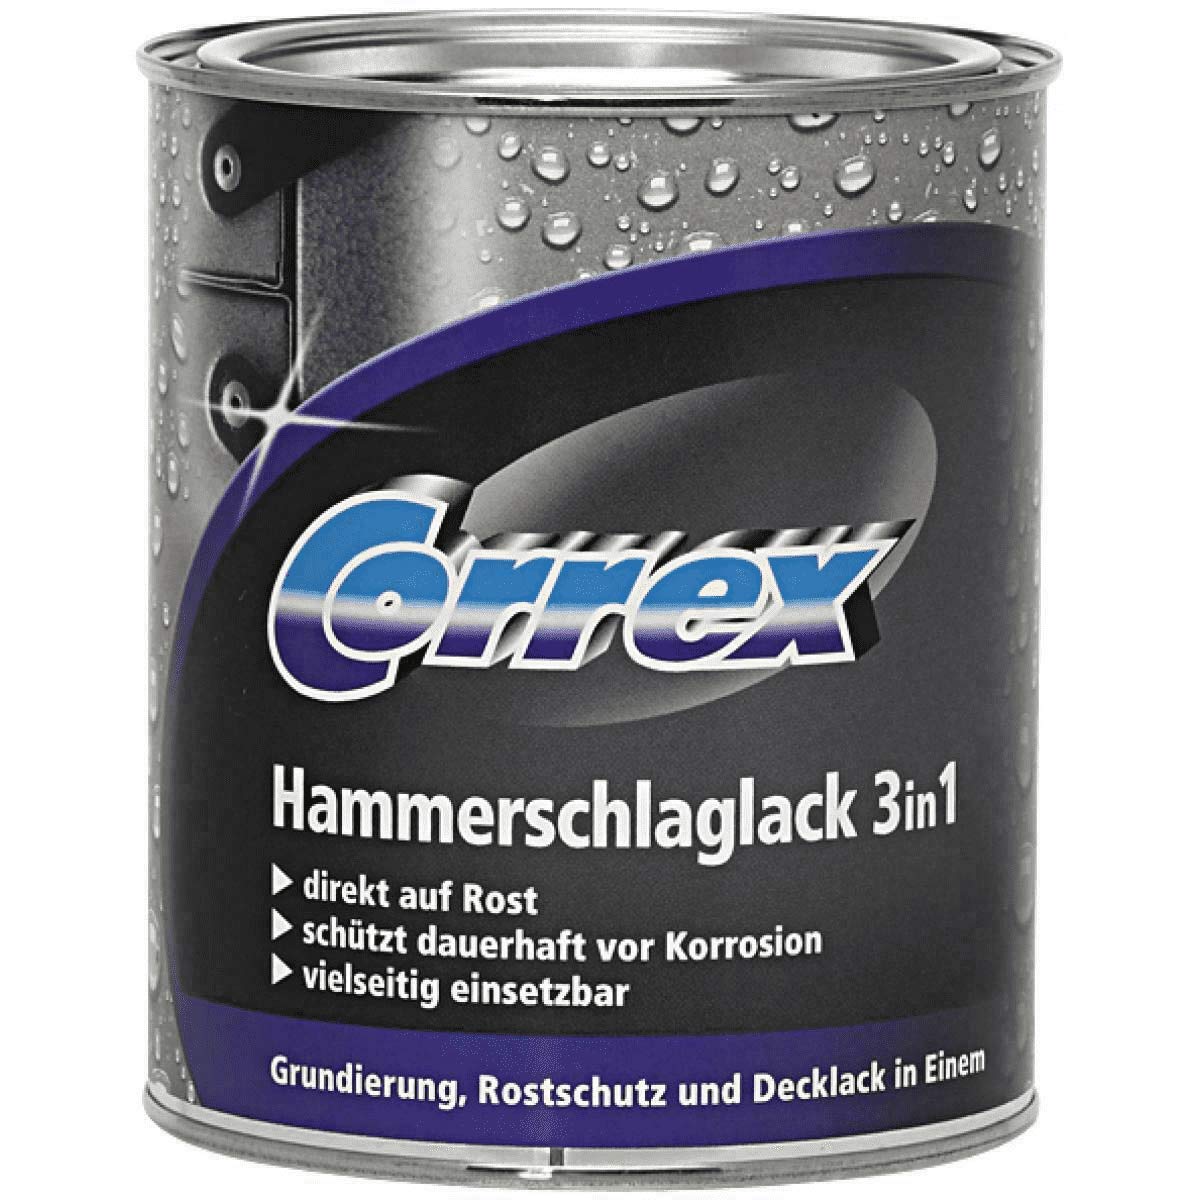 Correx 135060675500080 Correx Hammerschlaglack 3in1, 750 ml, Silber